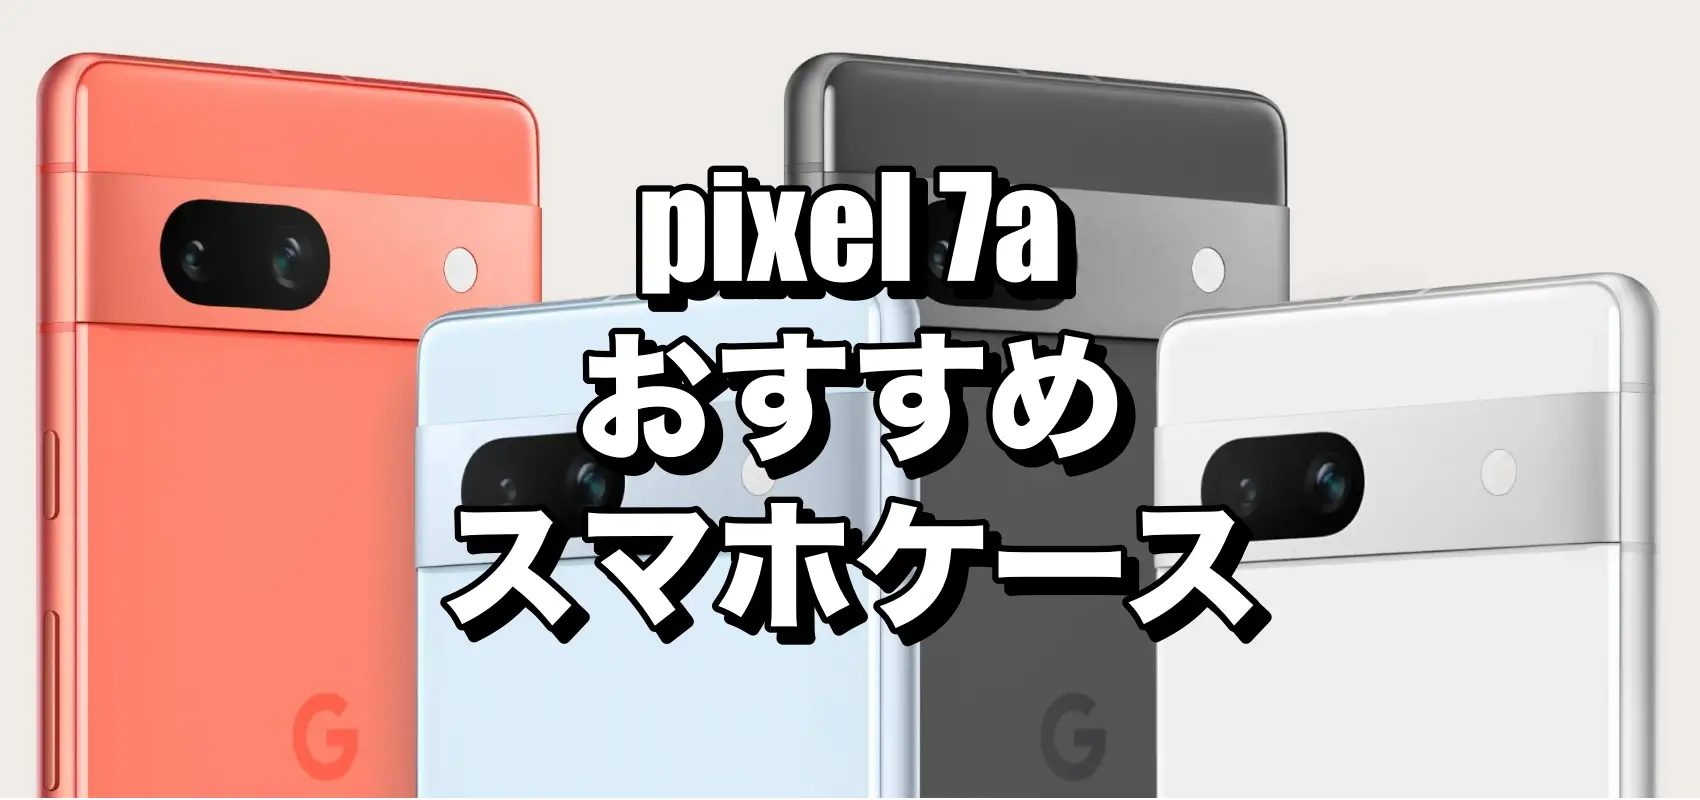 Google Pixel 7a クリアケース